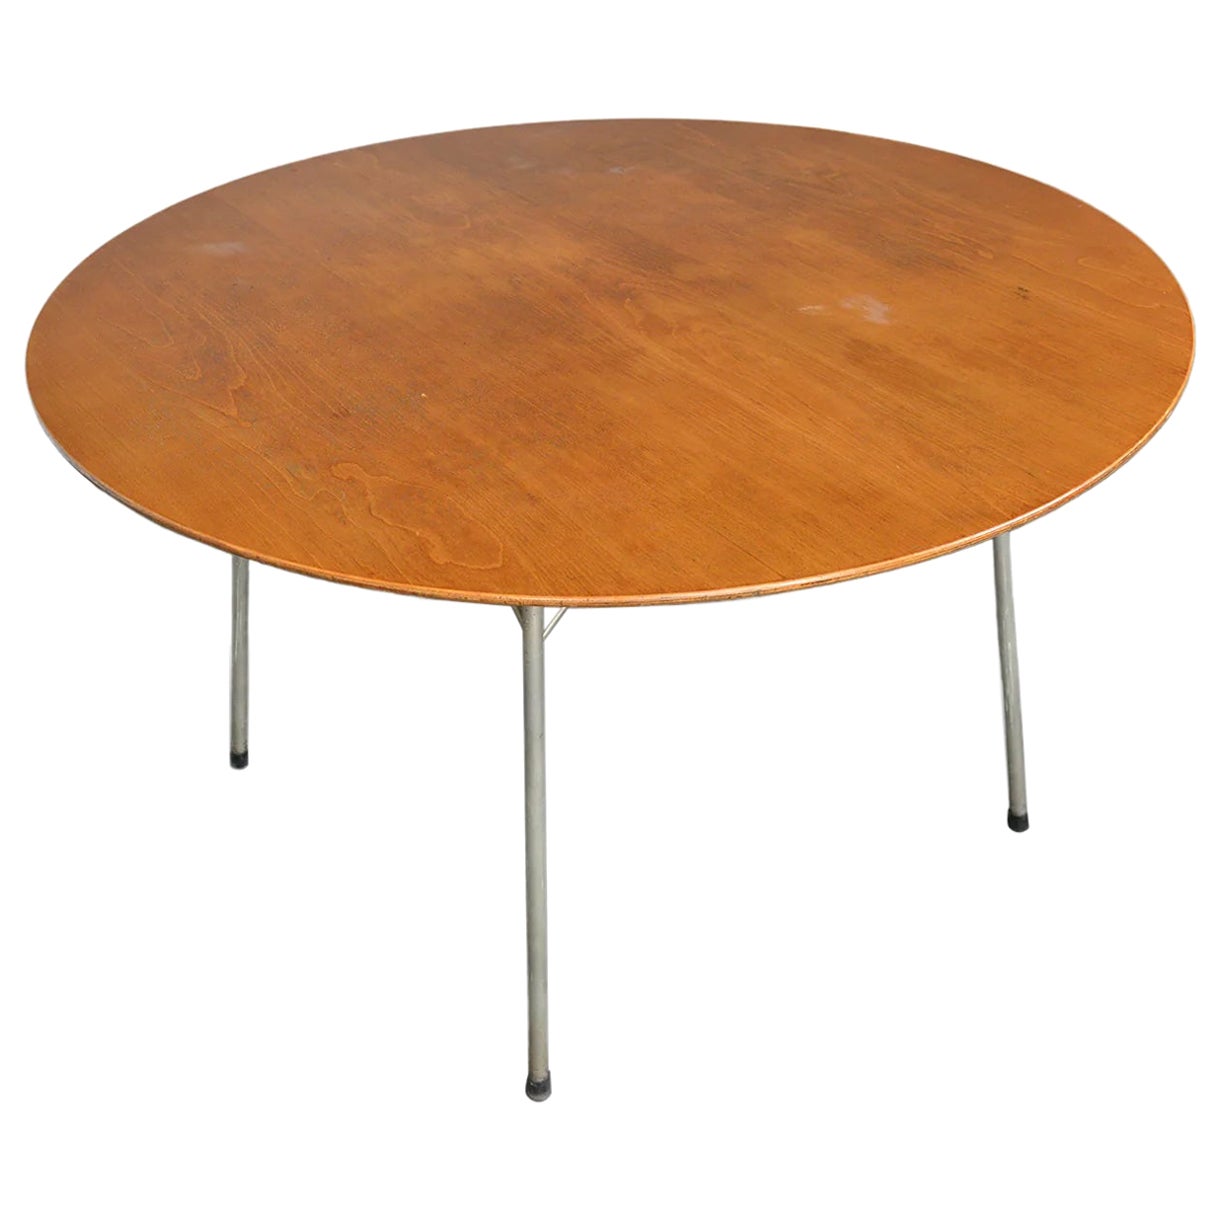 Arne Jacobsen "Ant" Dining Table in Teak For Sale